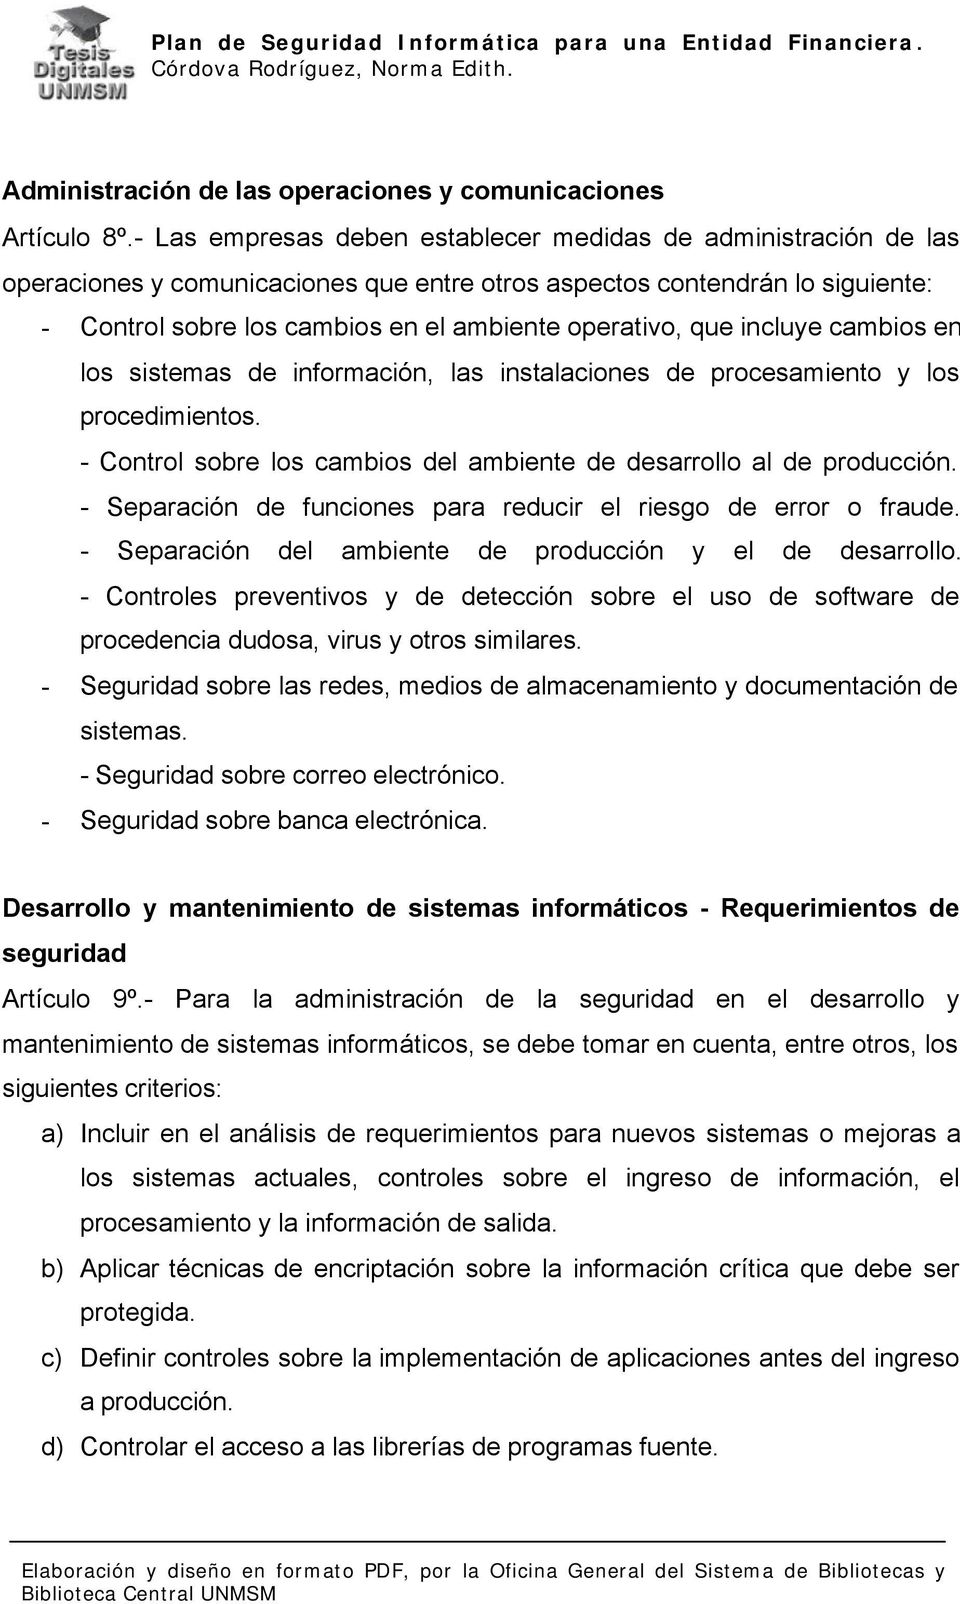 Plan de Seguridad Informática para una Entidad Financiera. Córdova  Rodríguez, Norma Edith. - PDF Free Download